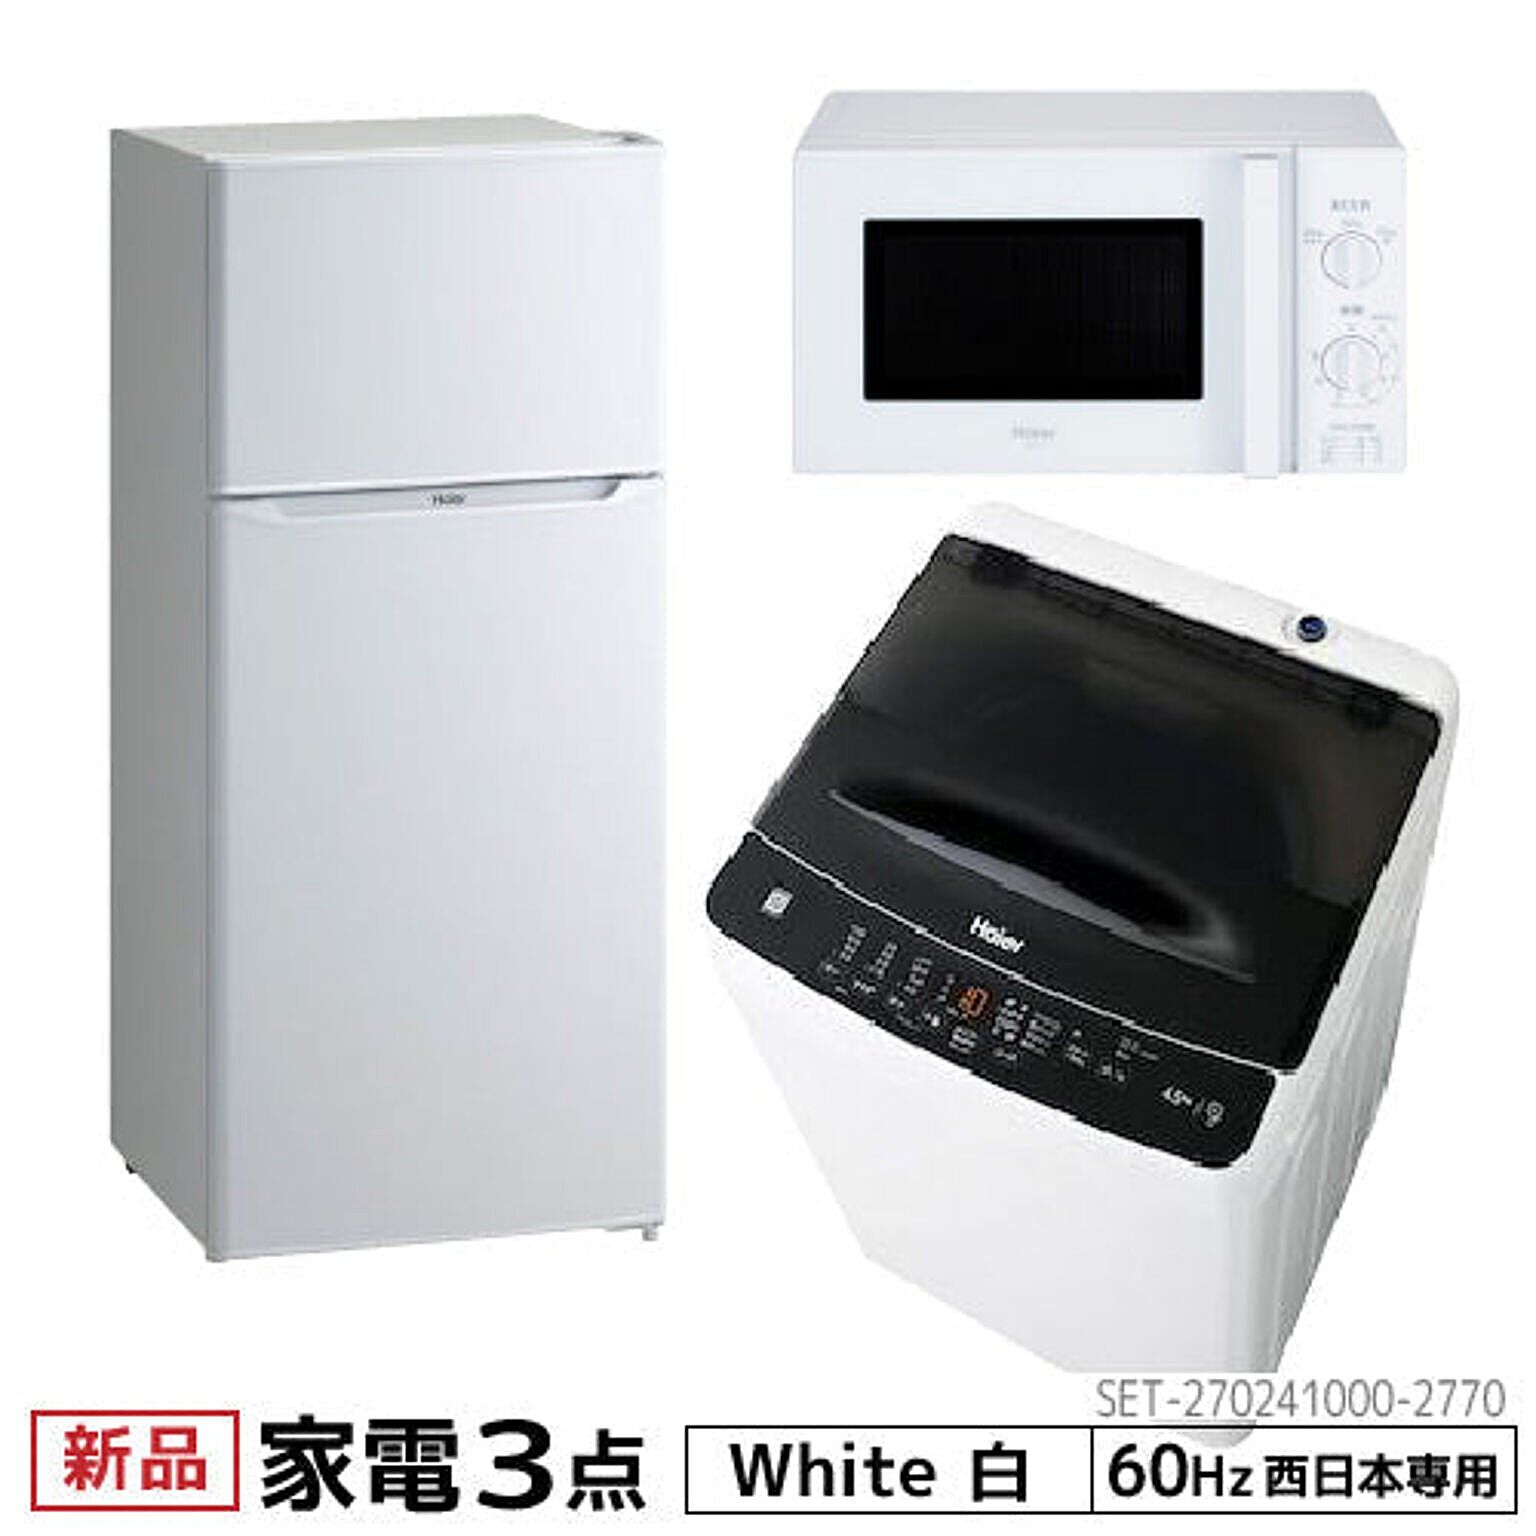 新生活 一人暮らし 家電セット 冷蔵庫 洗濯機 電子レンジ 3点セット 西日本地域専用 ハイアール 2ドア冷蔵庫 ホワイト色 130L 洗濯機 洗濯4.5kg 電子レンジ ホワイト 17L 60Hz